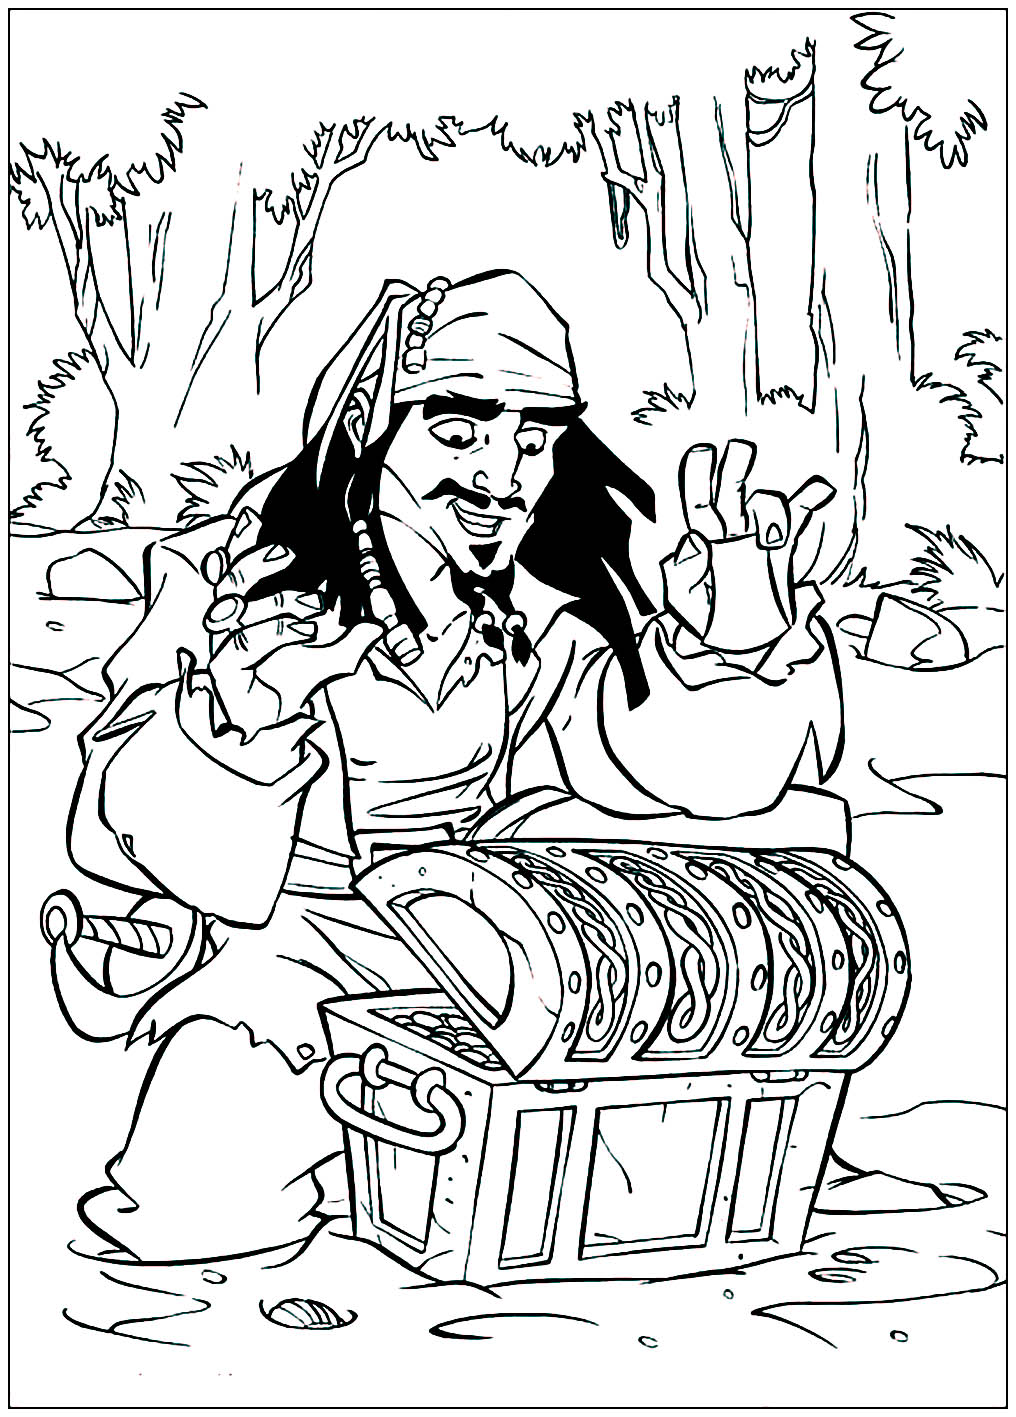 Colora este desenho a tempo de recuperar o tesouro antes do Jack Sparrow!